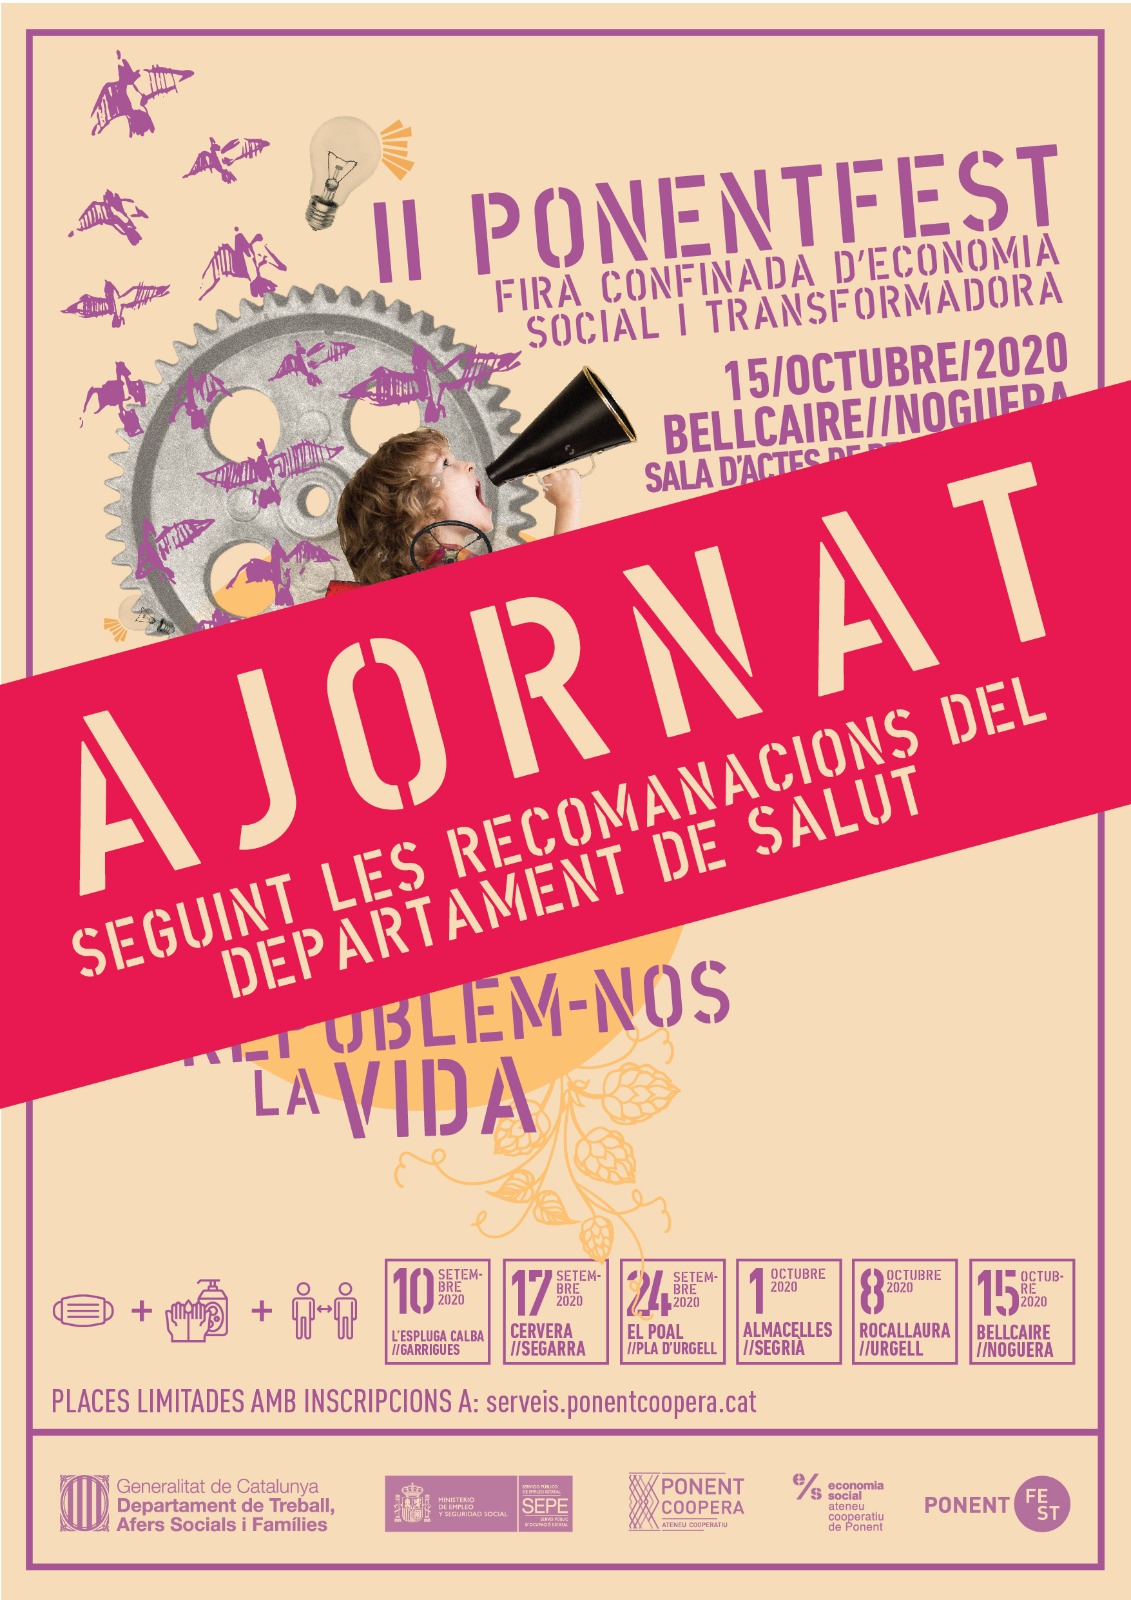 AJORNAT - II Ponent FEST, Fira Confinada d'Economia Social i Transformadora